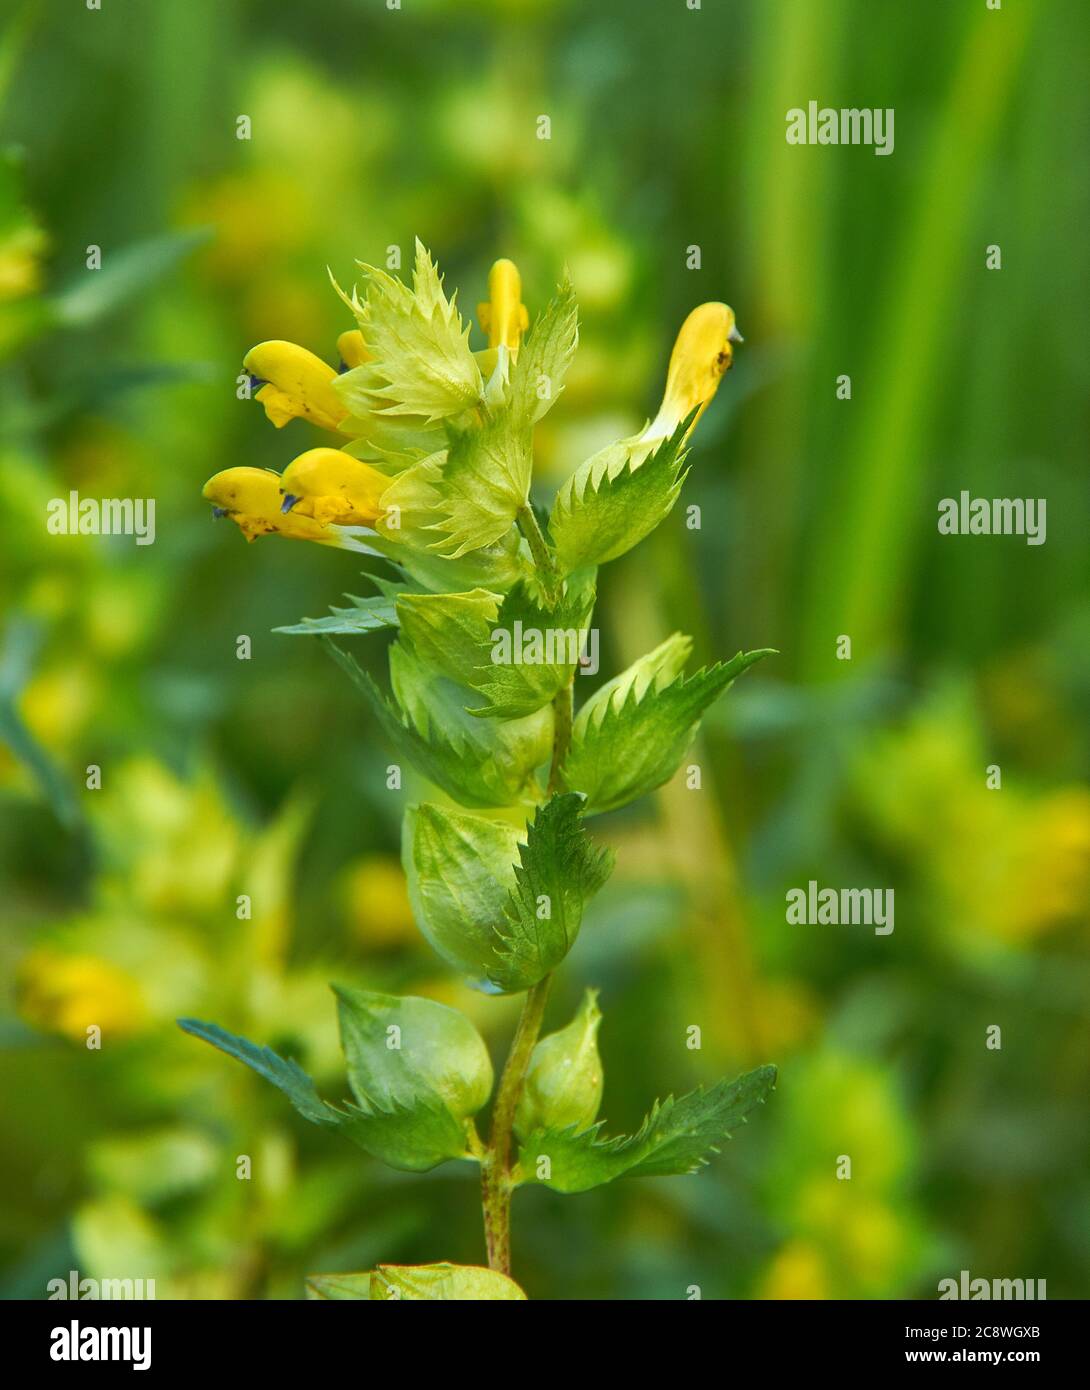 Rinanthus angustifolius, rattolo con foglie strette o maggiore gattonetto giallo, fiore selvatico annuale nativo di temperare praterie in gran parte d'Europa, e no Foto Stock